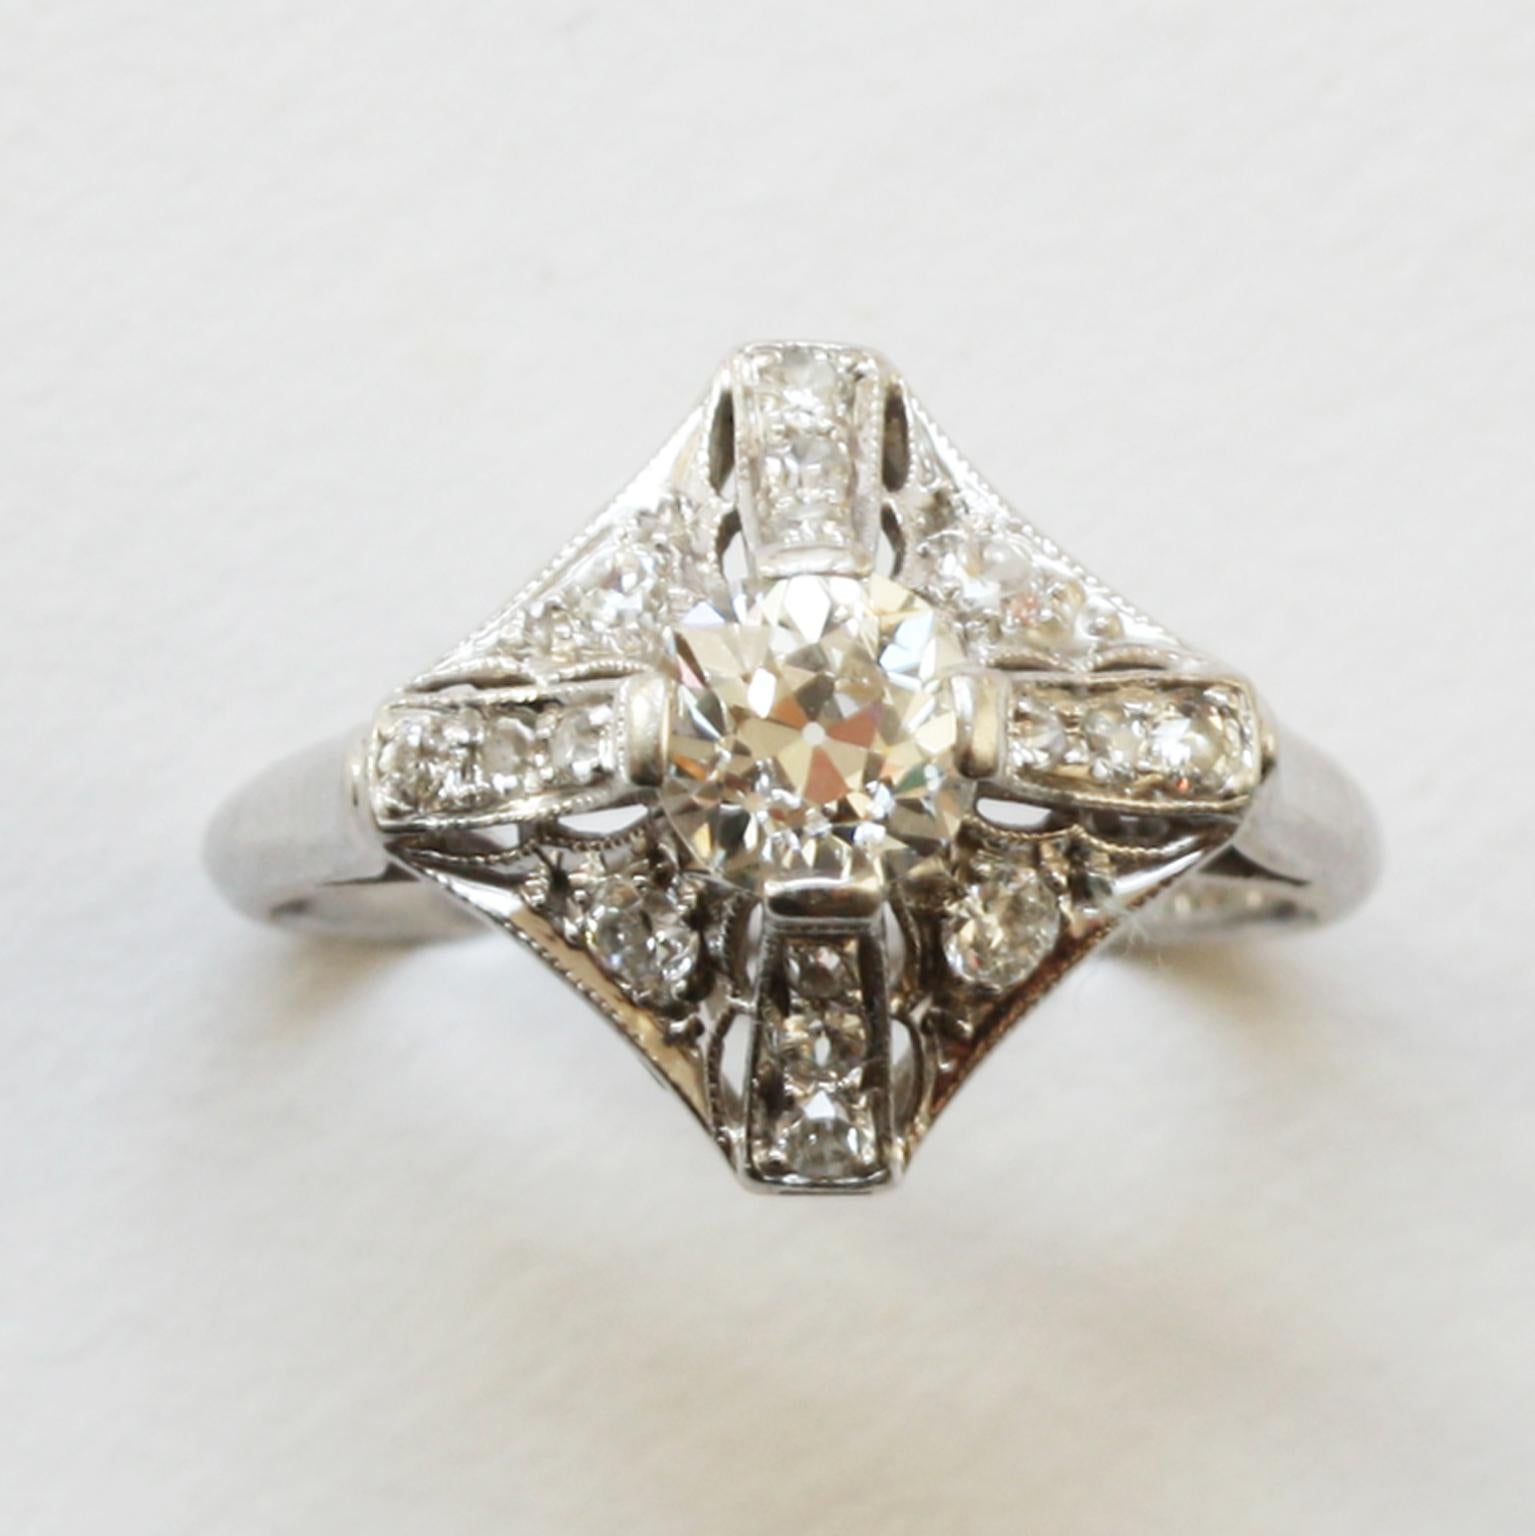 Ein Art-Deco-Ring aus Platin und Diamanten, besetzt mit Diamanten im Altschliff (ca. 0,9 Karat), signiert: Peacock, für C.D. Pfau aus Chigaco, Amerika, um 1920.

ringgröße: 16- mm. 5 ¼ US.
gewicht: 3,61 Gramm